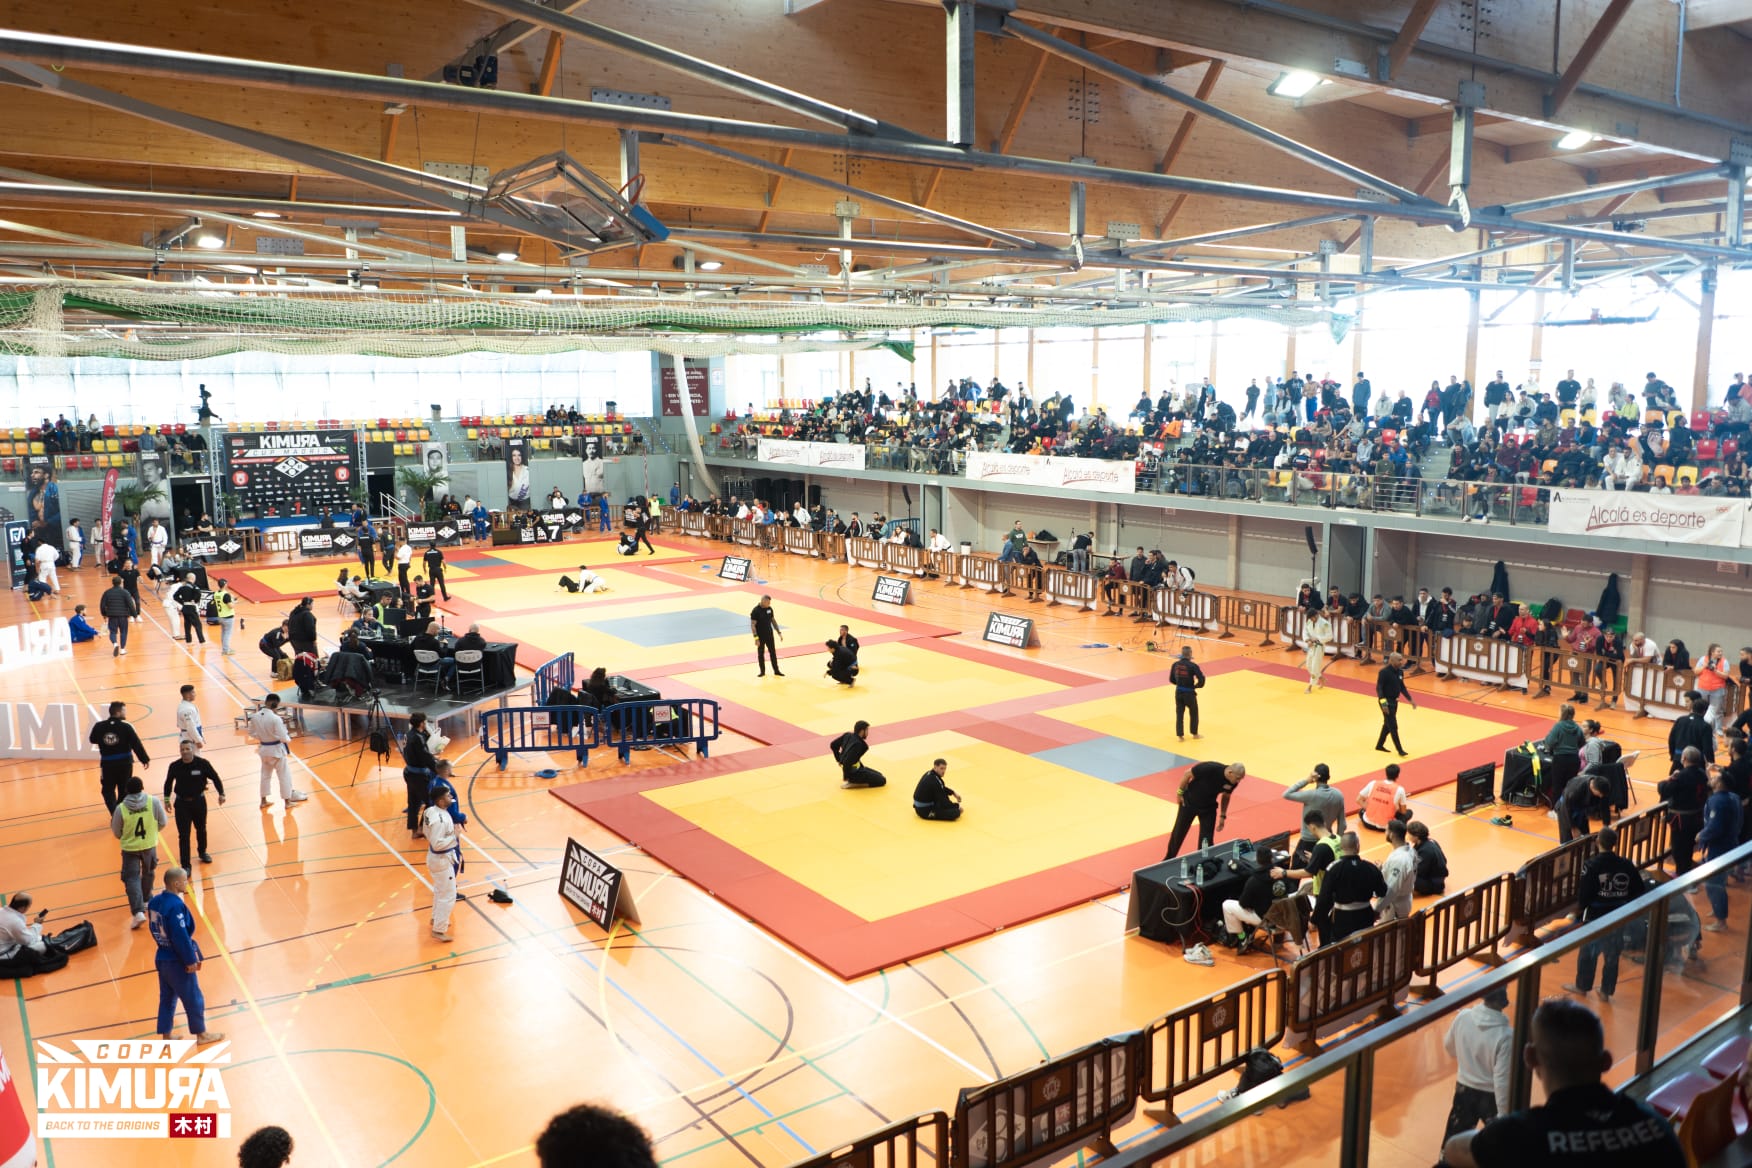 Kimura Cup es la mejor promotora de eventos deportivos de bjj (brazilian jiu jitsu) y grappling en España y pronto en Europa